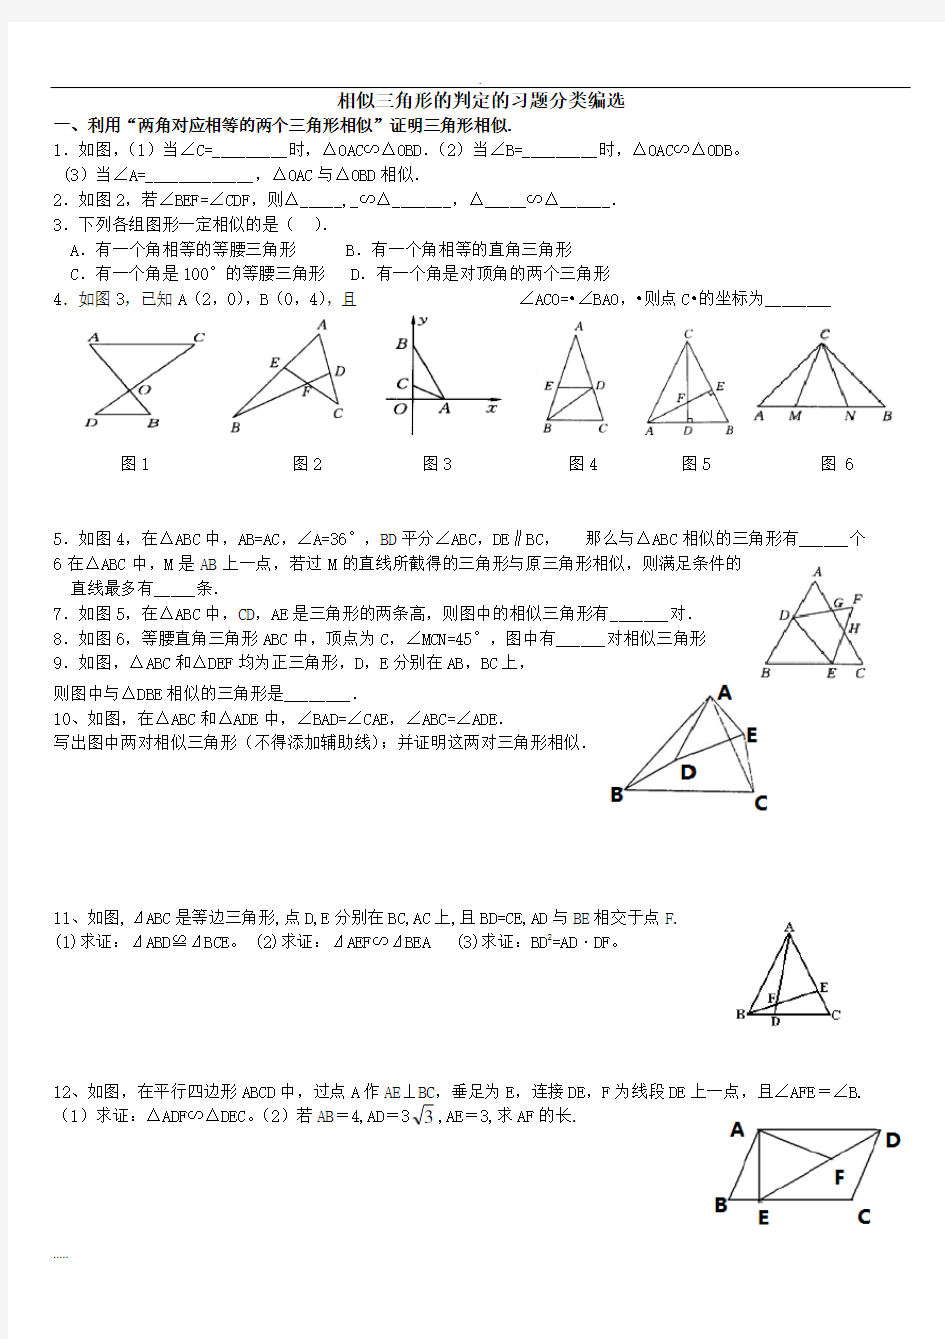 相似三角形判定分类习题集